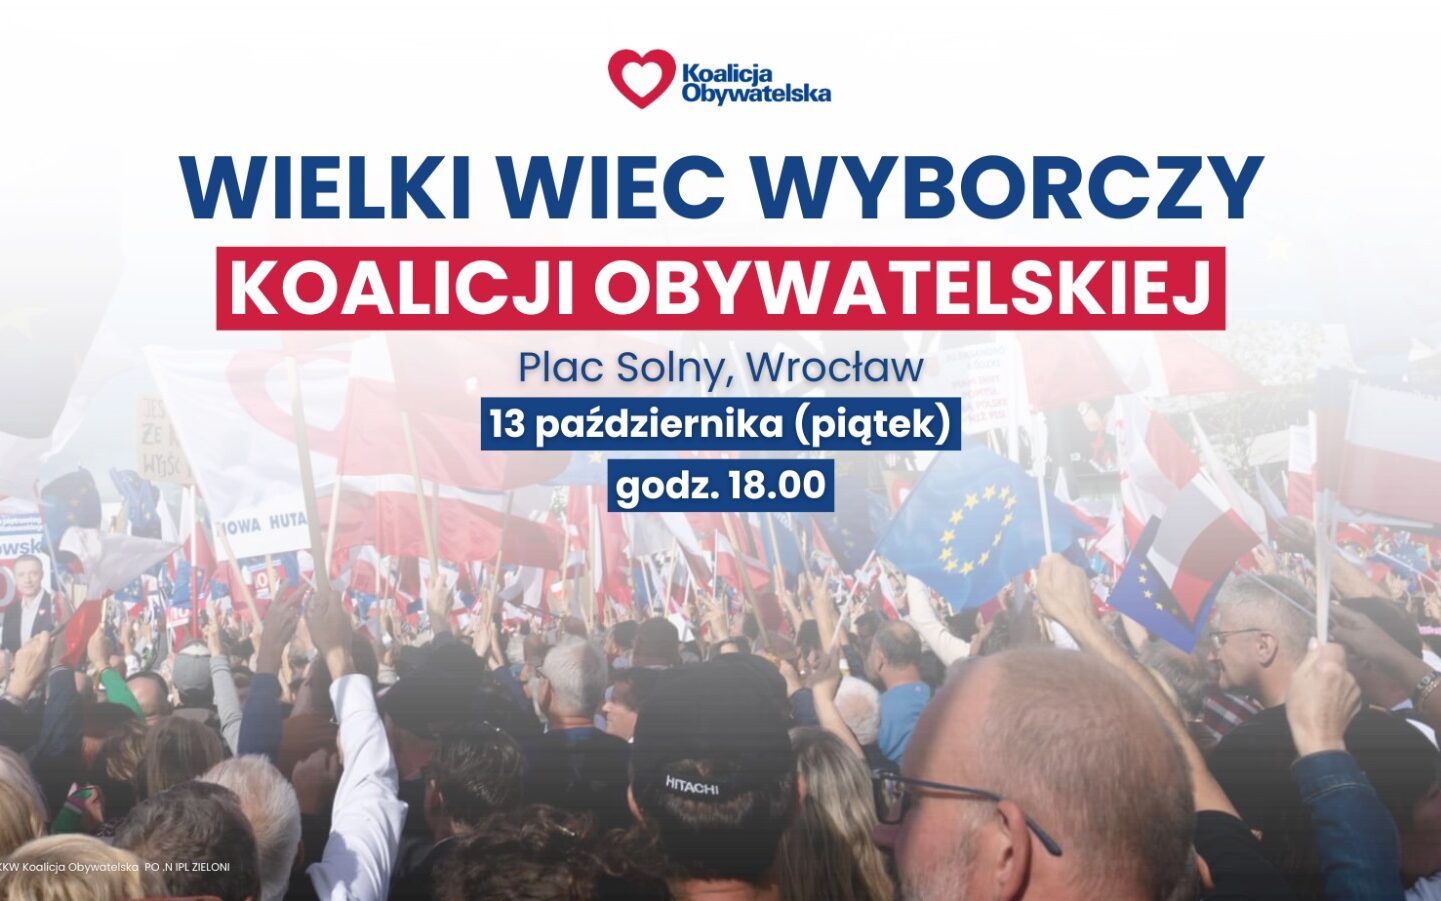 Wielki Wiec Wyborczy Koalicji Obywatelskiej we Wrocławiu